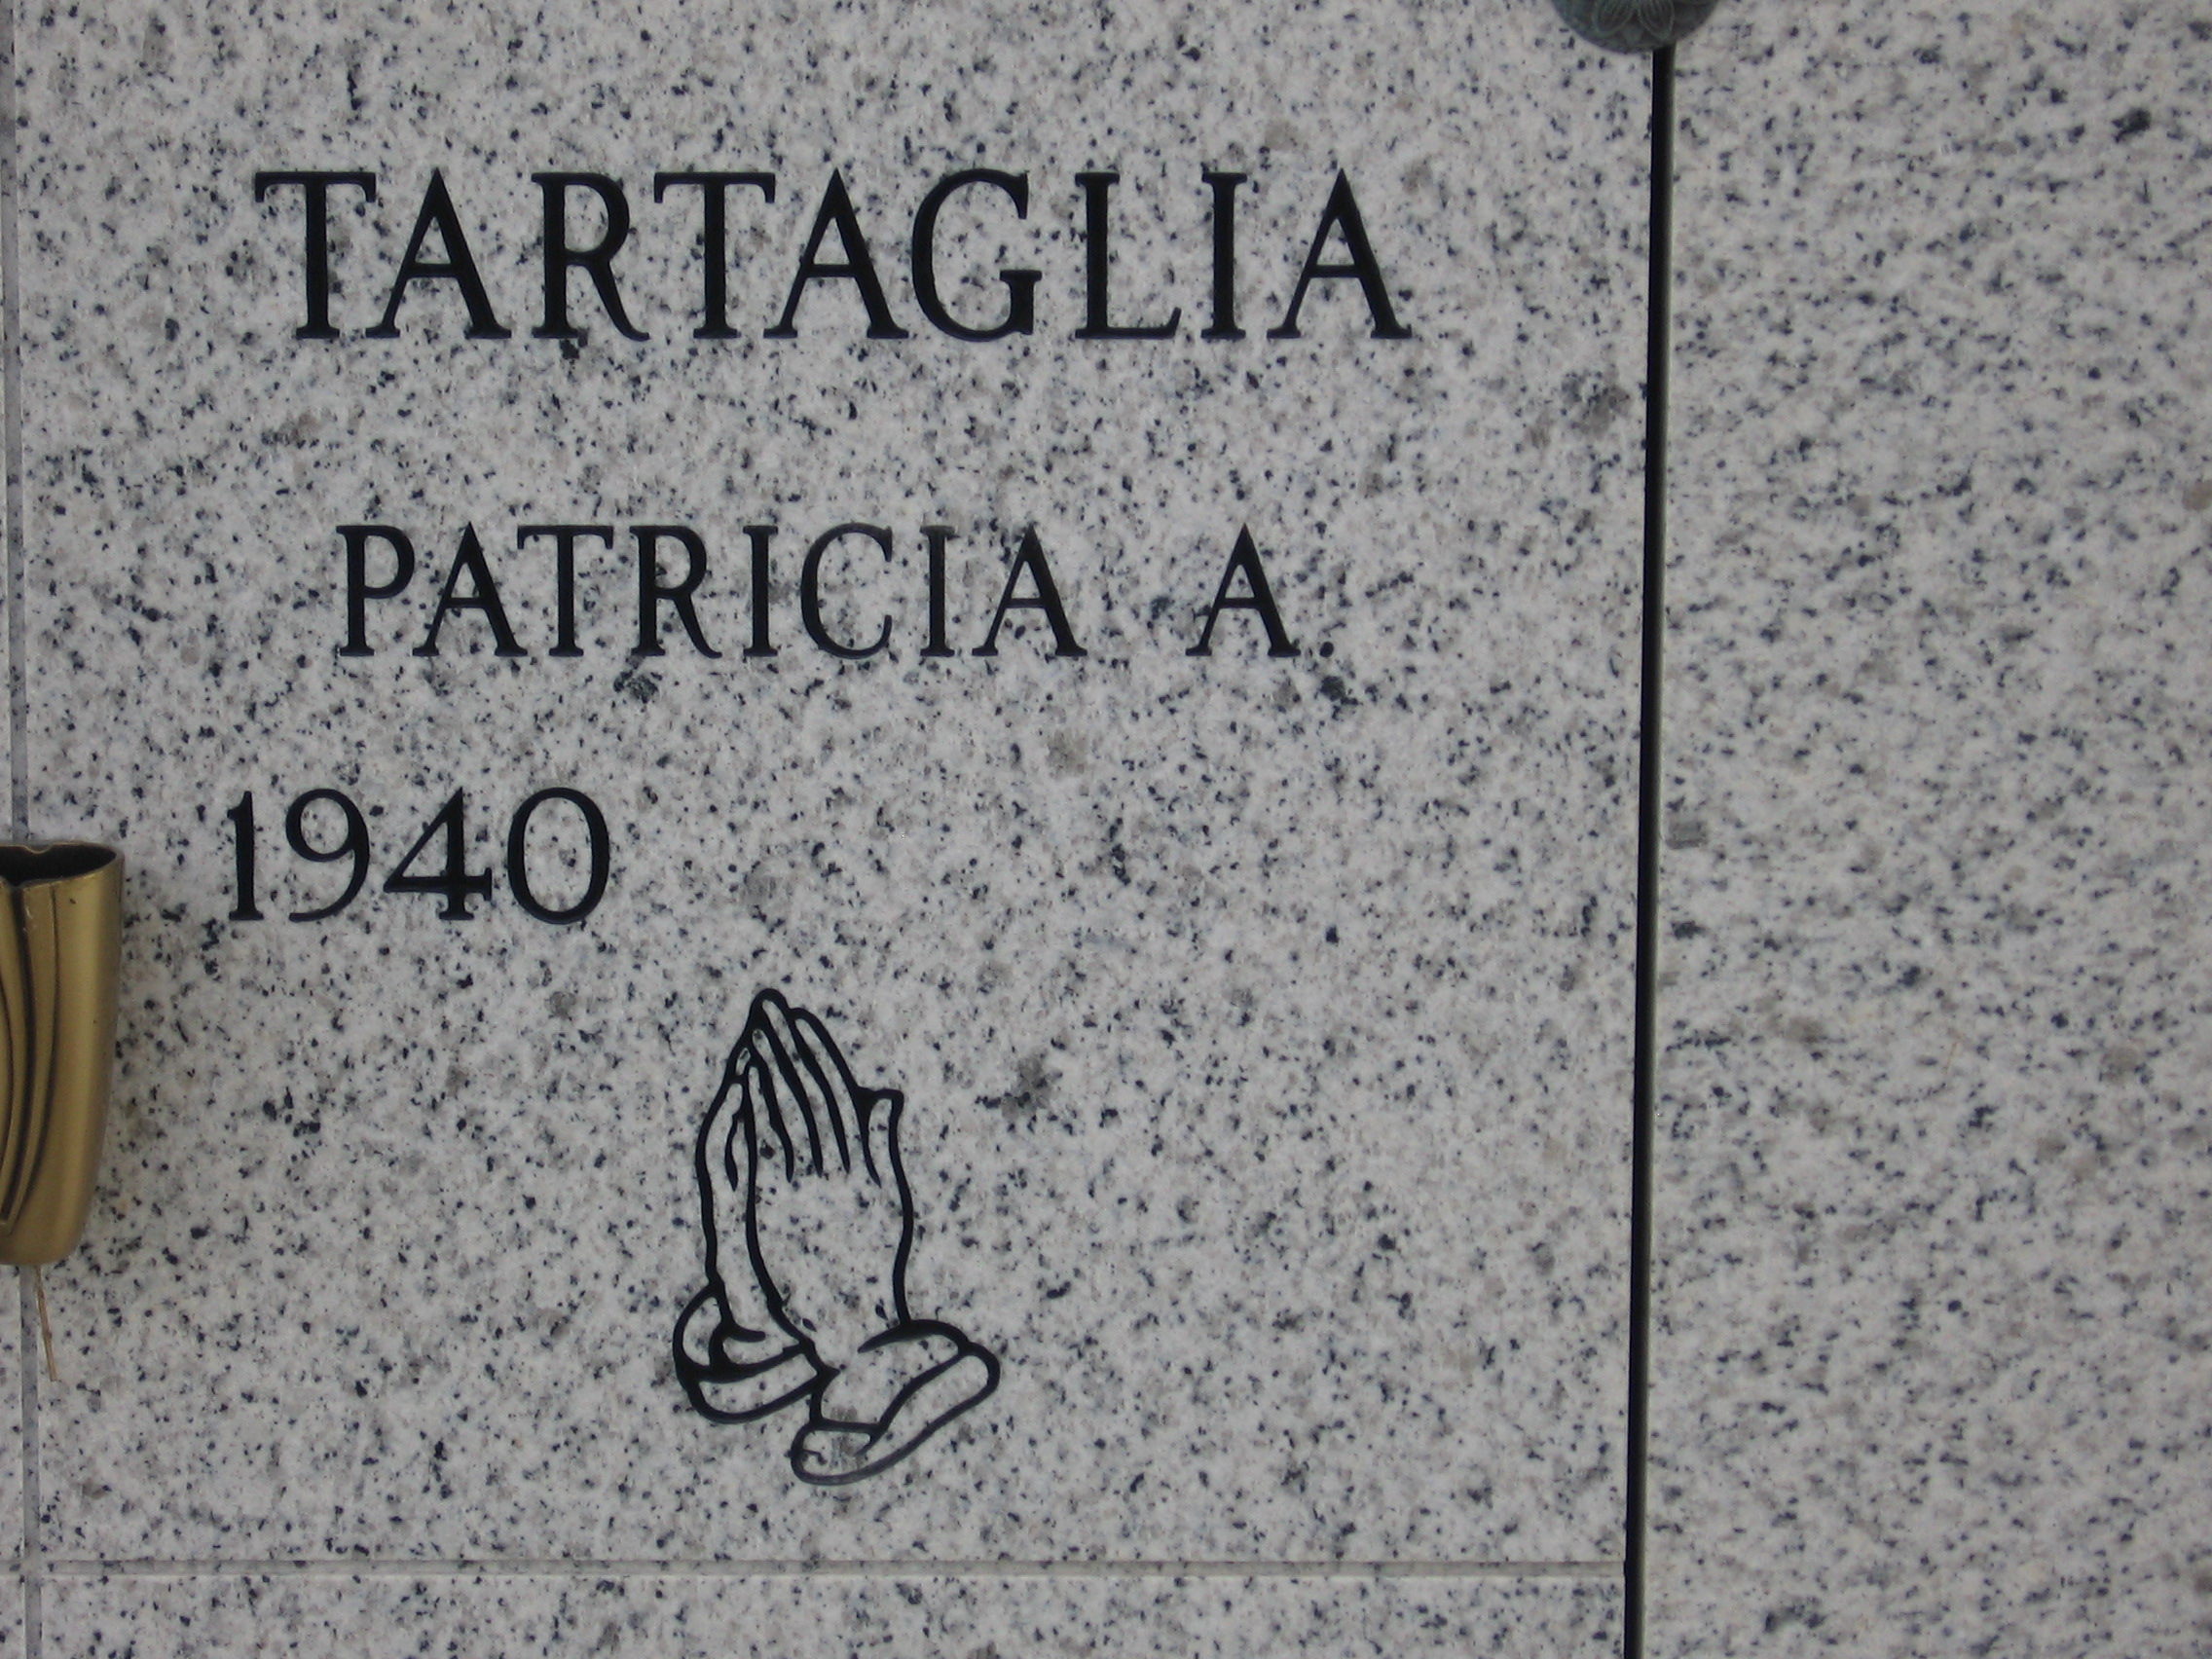 Patricia A Tartaglia